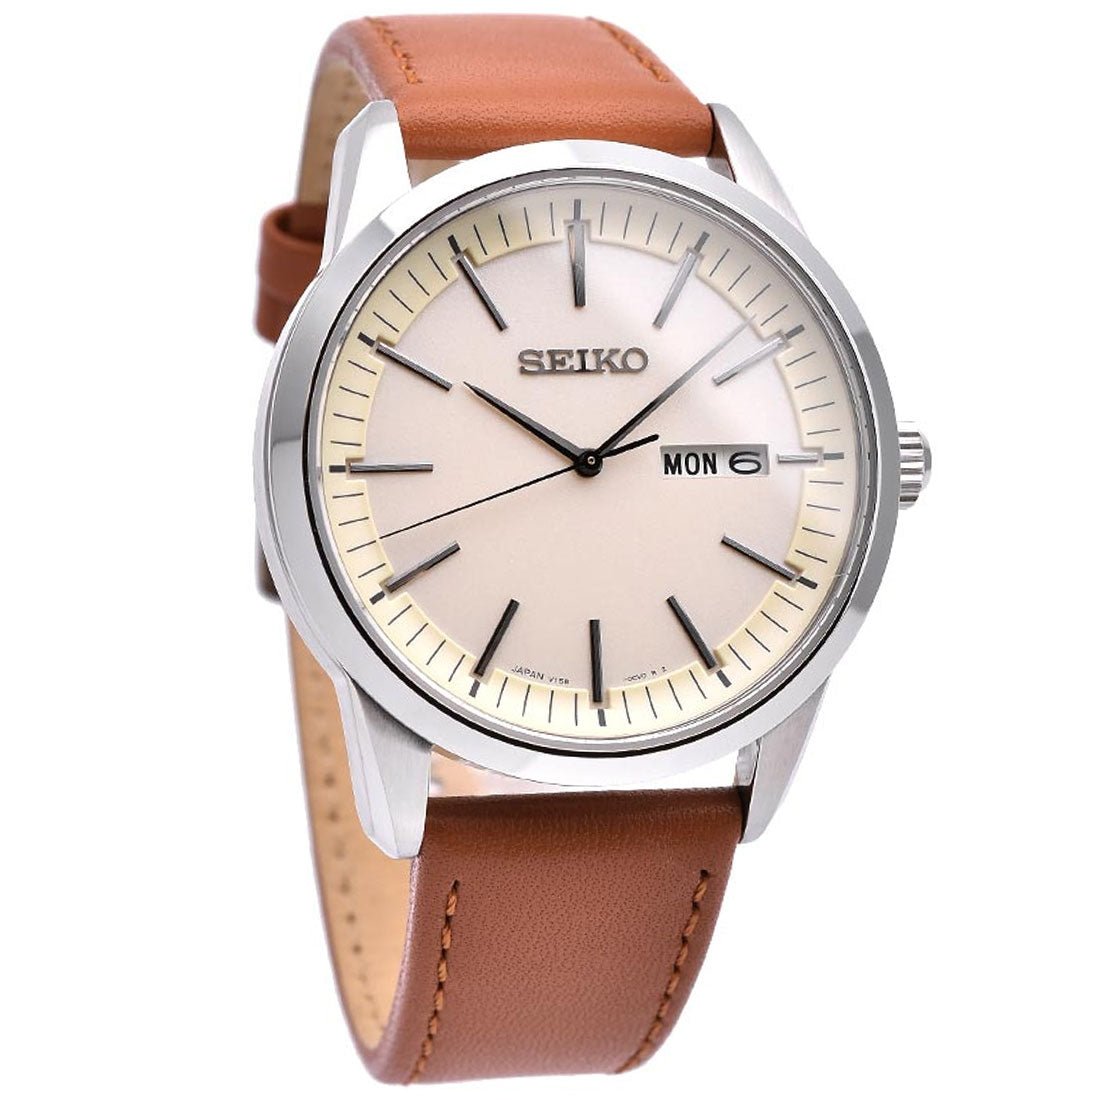 Seiko Selection Solar JDM Watch SBPX125 -Seiko